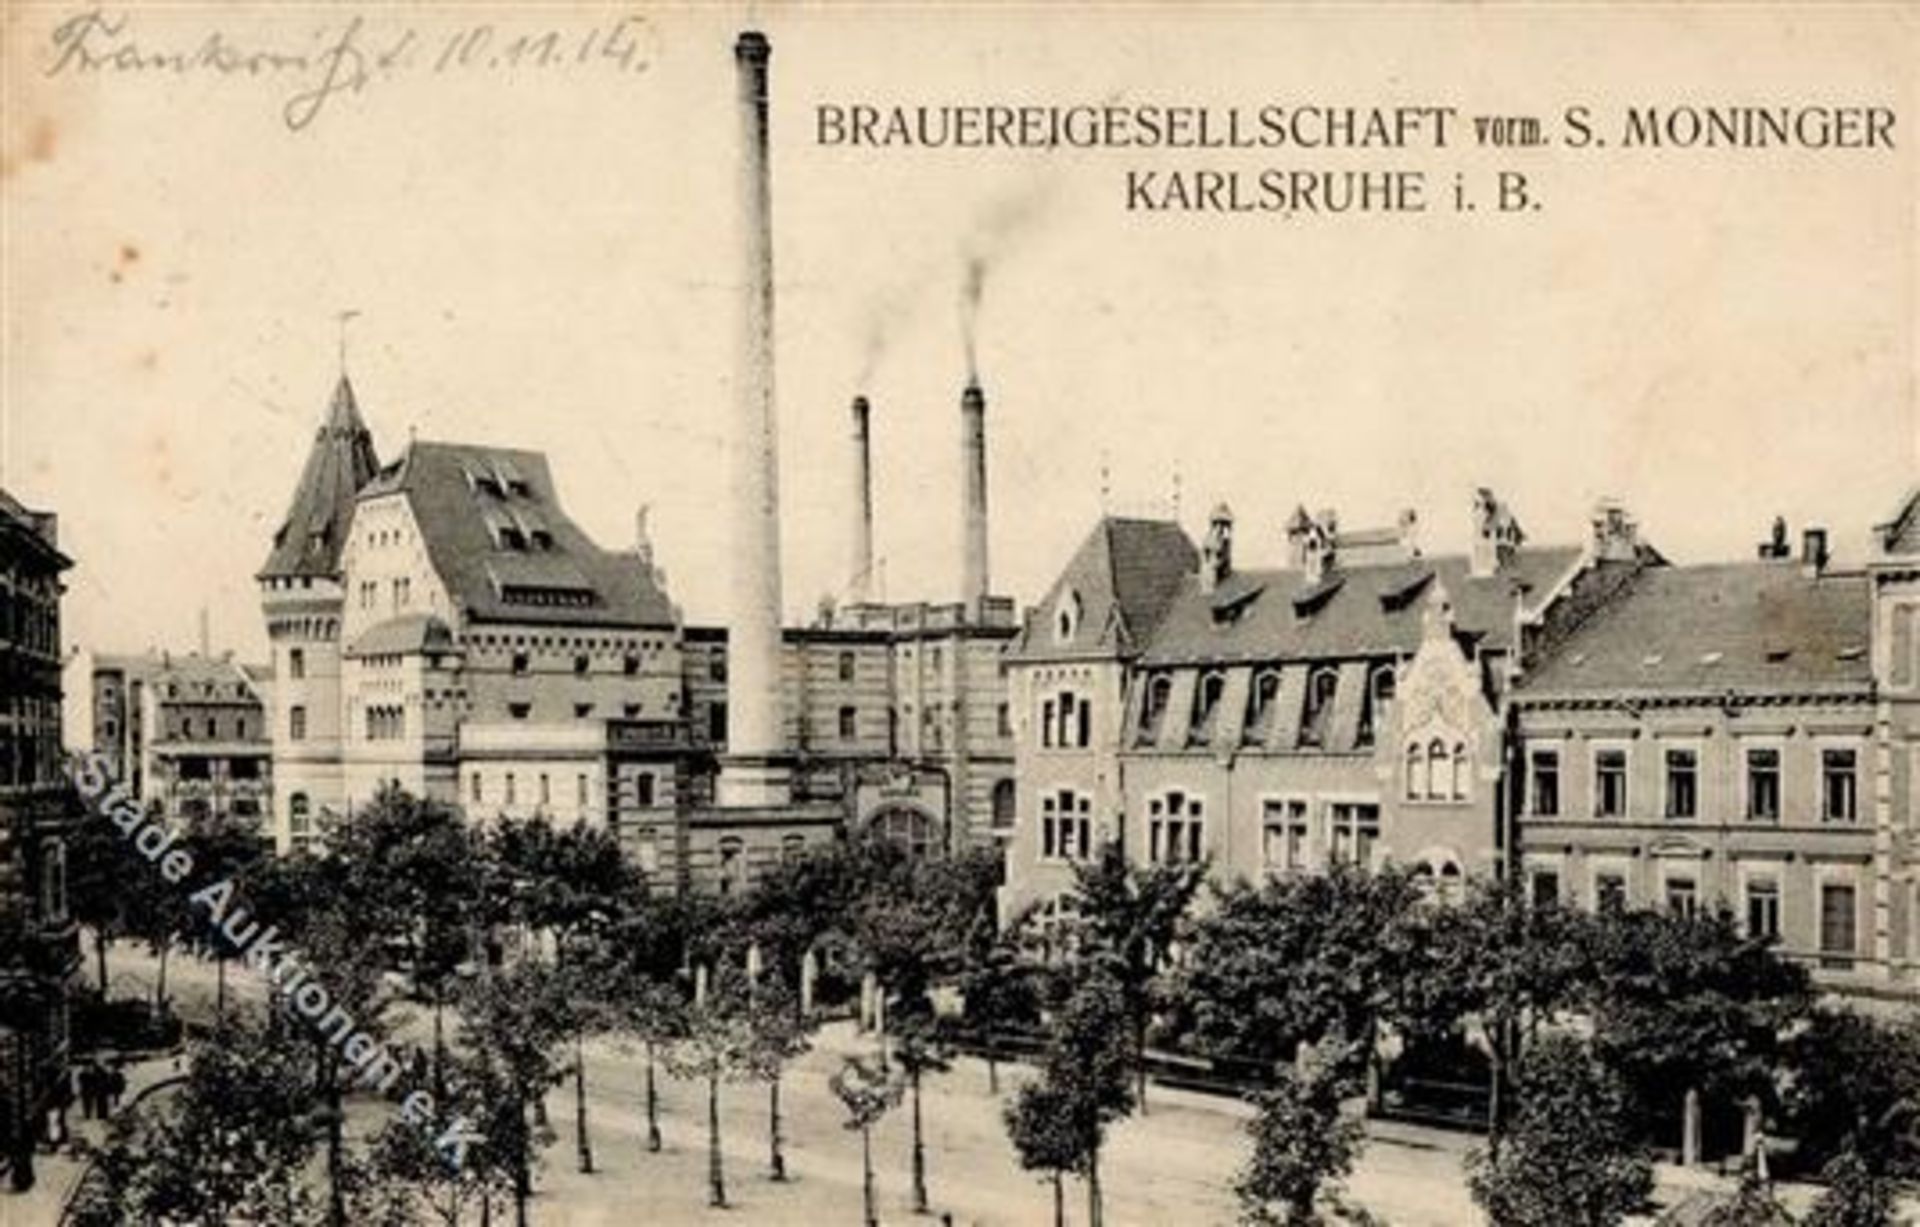 KARLSRUHE (7500) - BRAUEREIGESELLSCHAFT v. S.Moninger I-IIDieses Los wird in einer online-Auktion